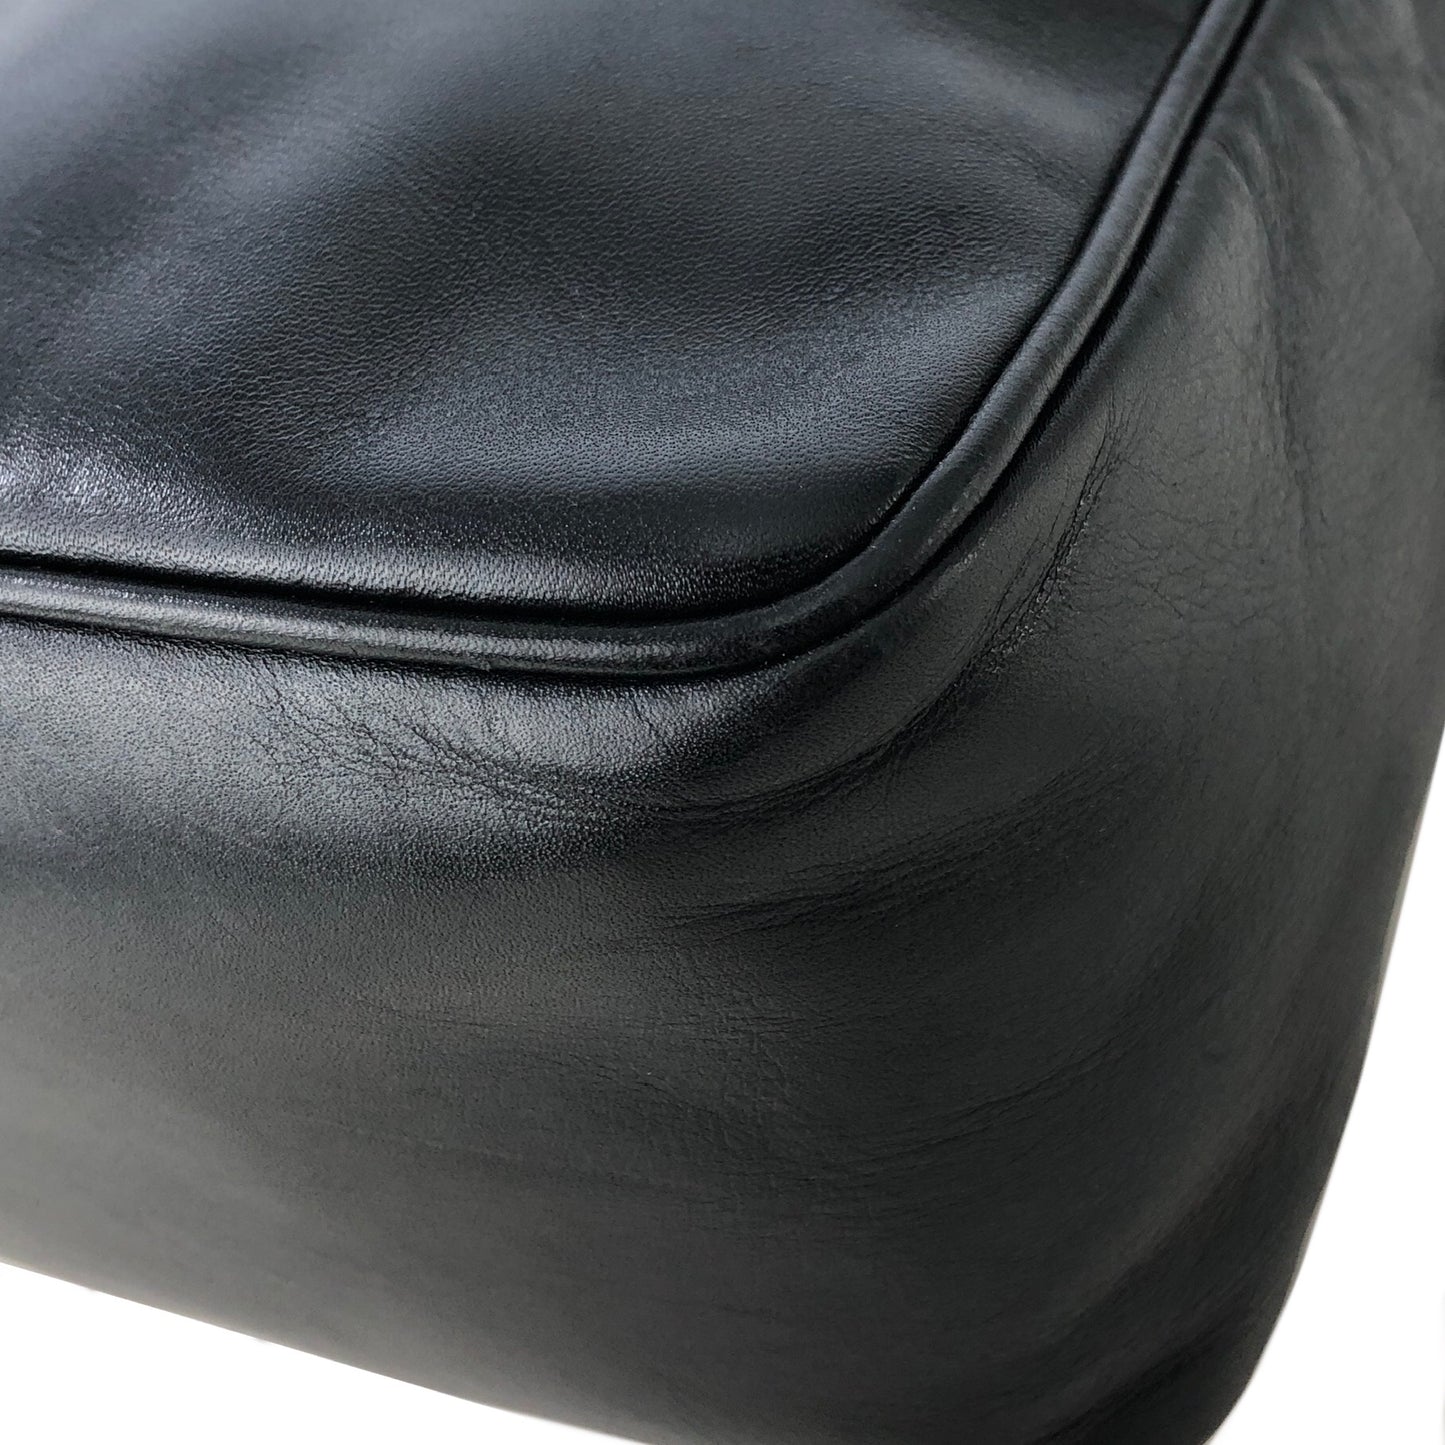 Christian Dior Logo Charm Leather Crossbody Shoulder bag Black Vintage gyuw6k